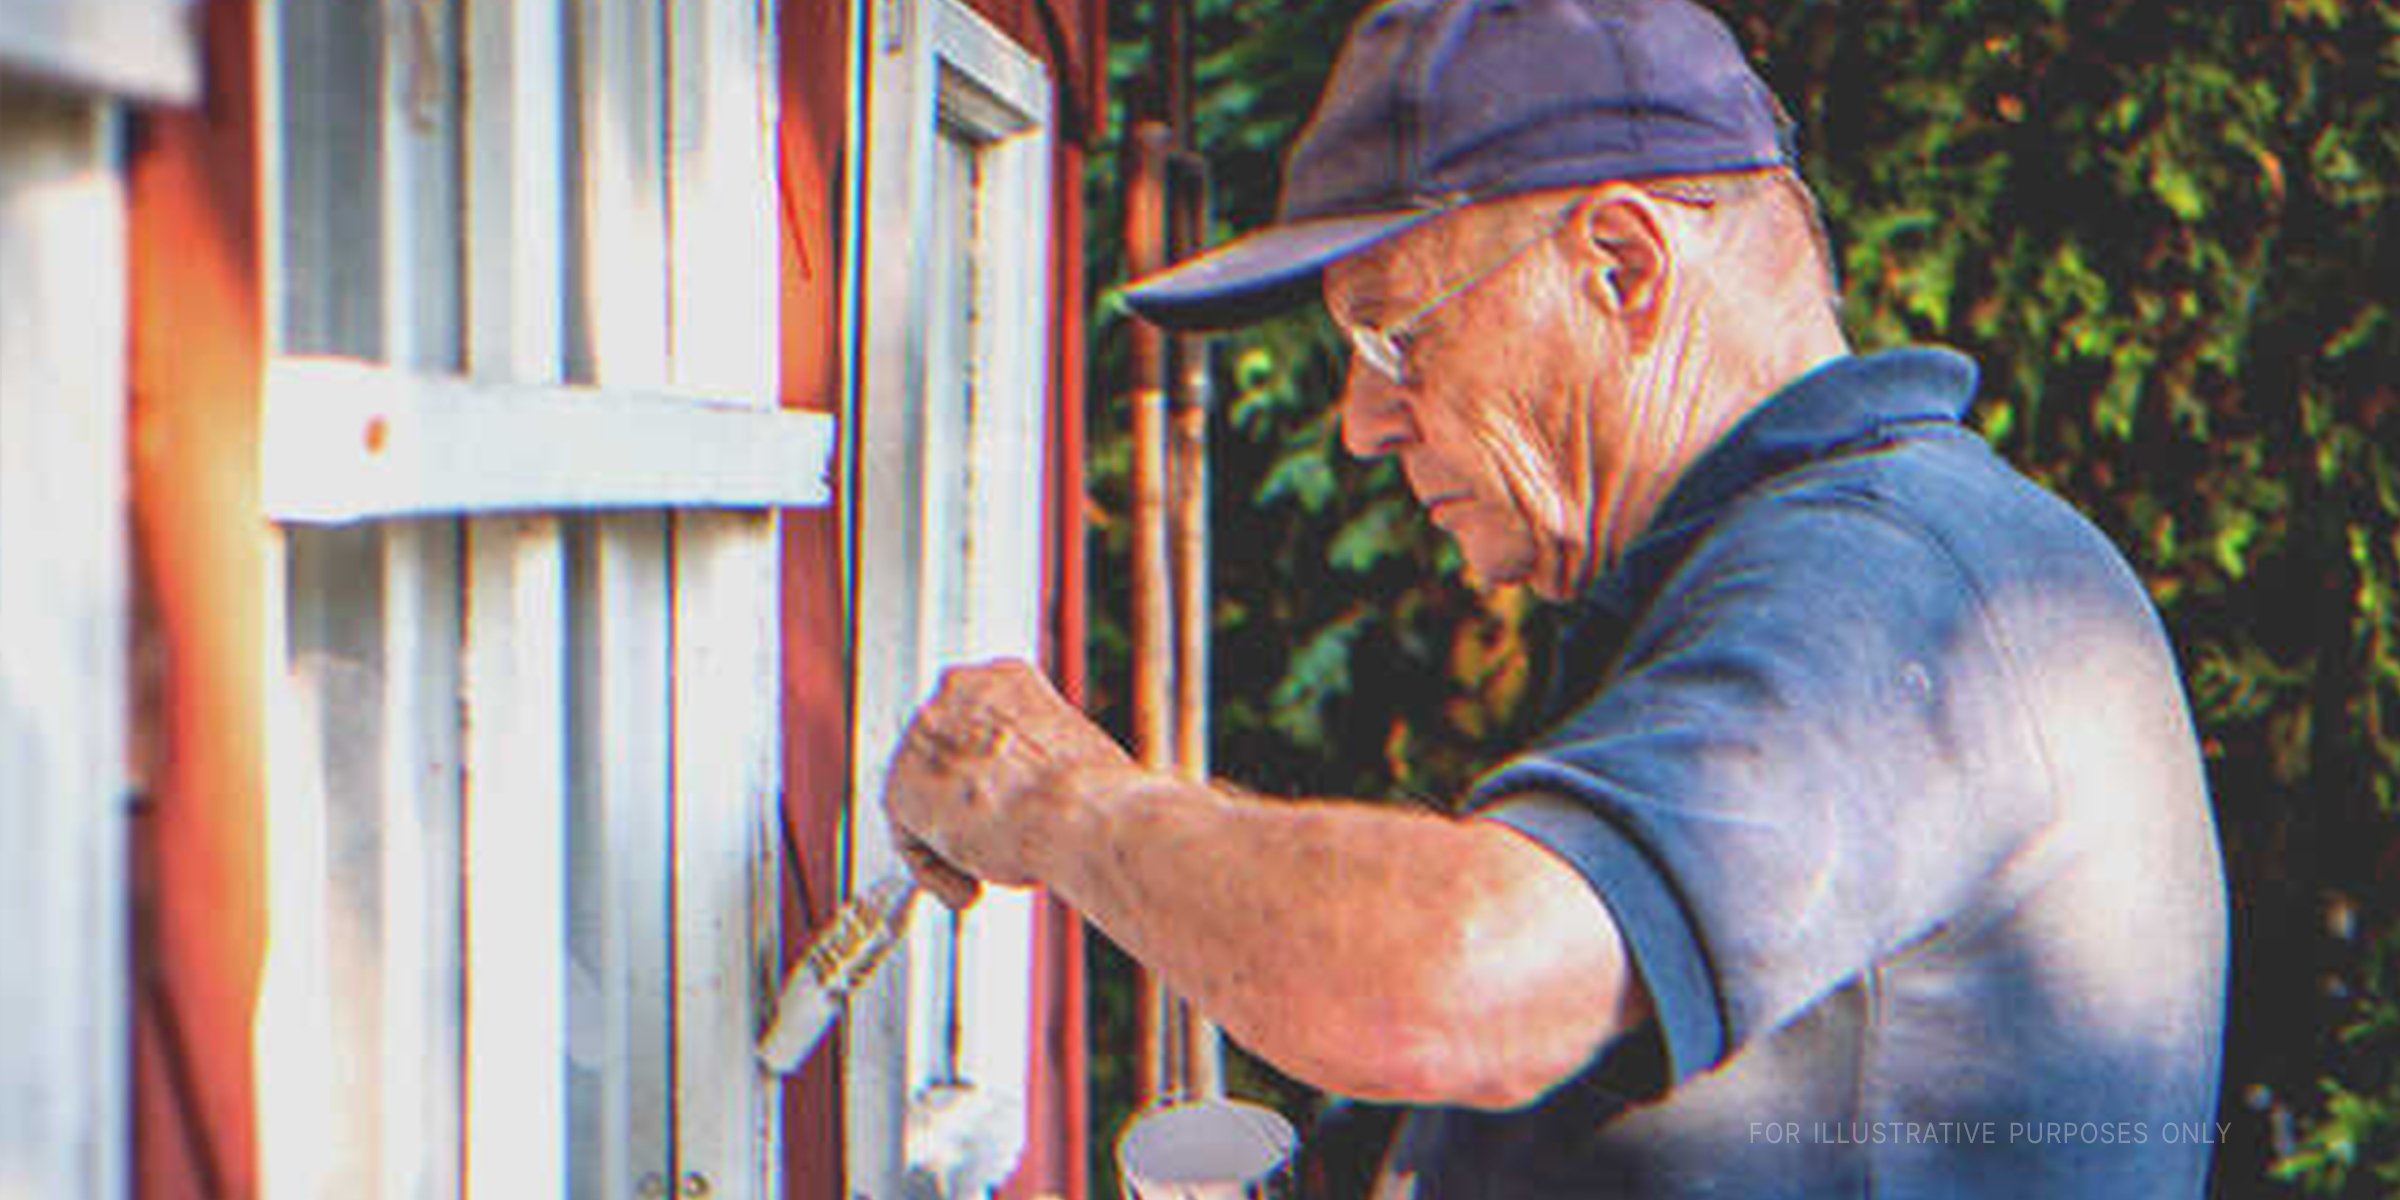 Un homme peignant le rebord d'une fenêtre | Shutterstock